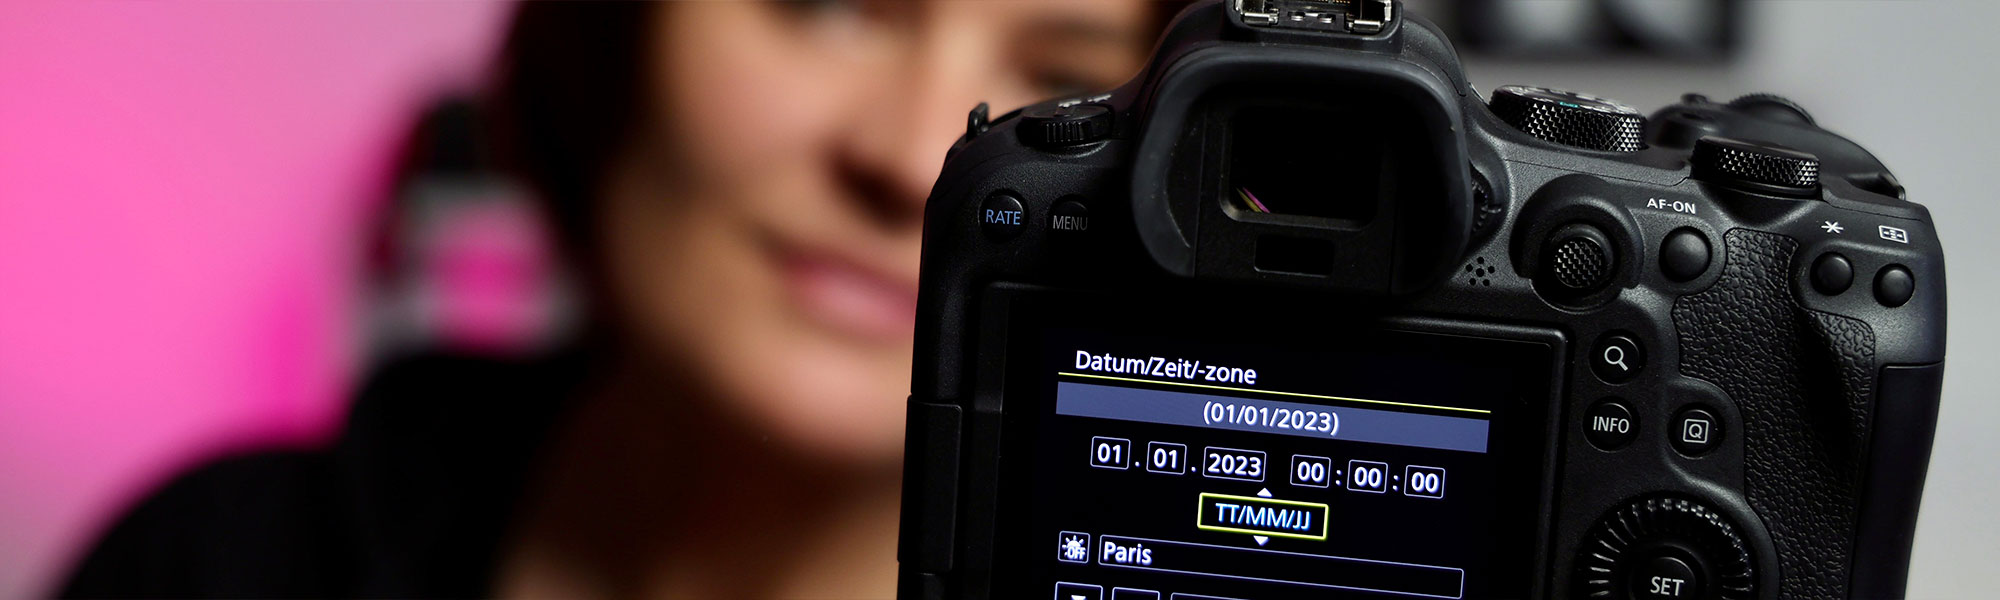 Quick-Tipp: Stelle Uhrzeit und Sprache an deiner Kamera ein